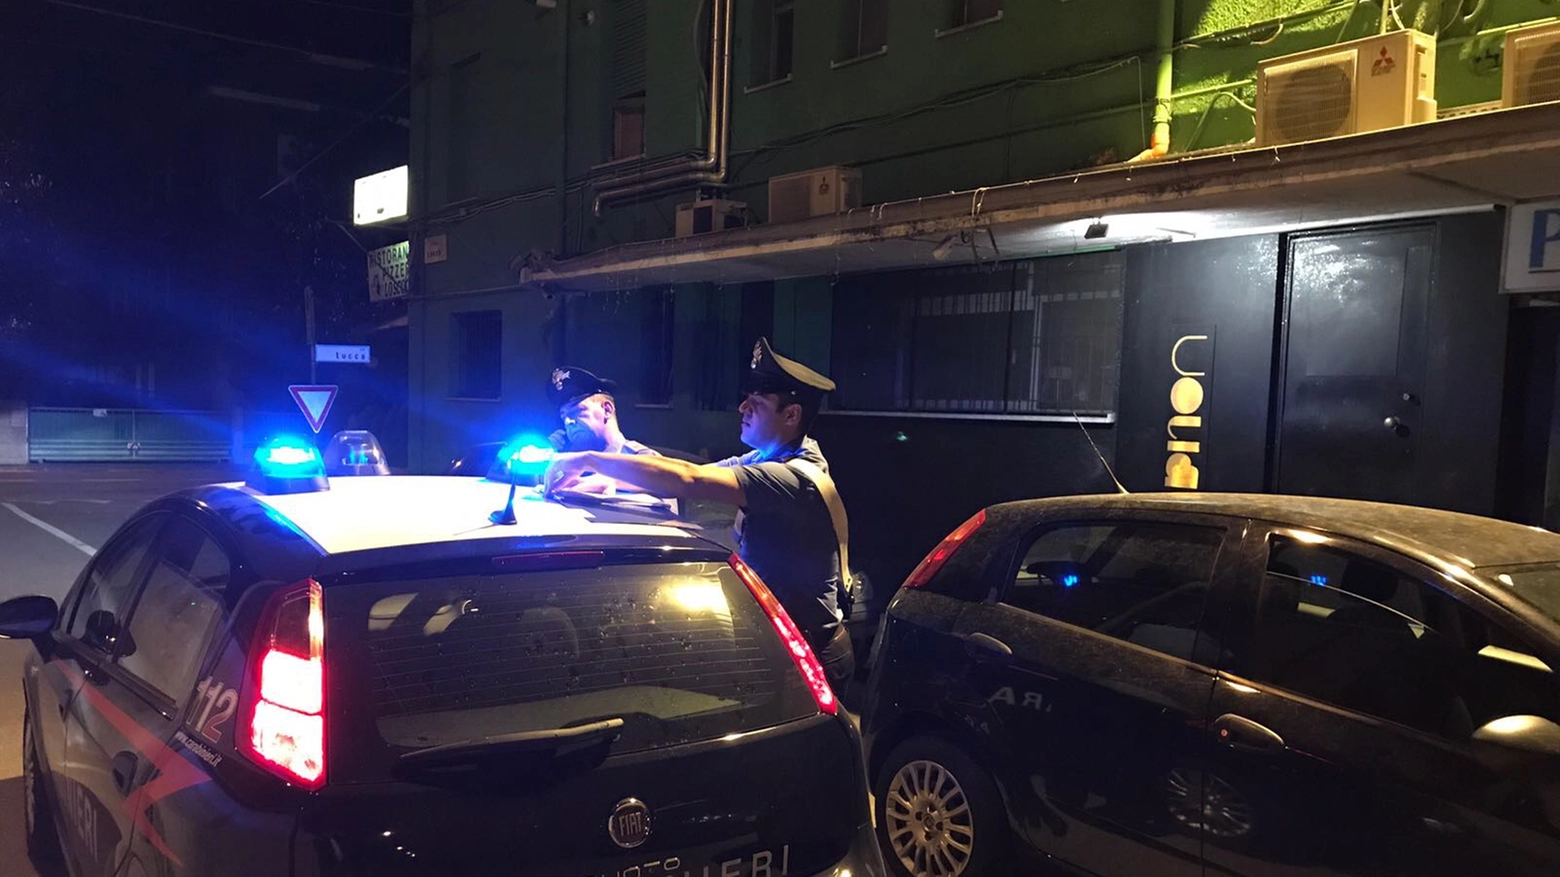 Night club chiuso apre lo stesso, carabinieri in azione